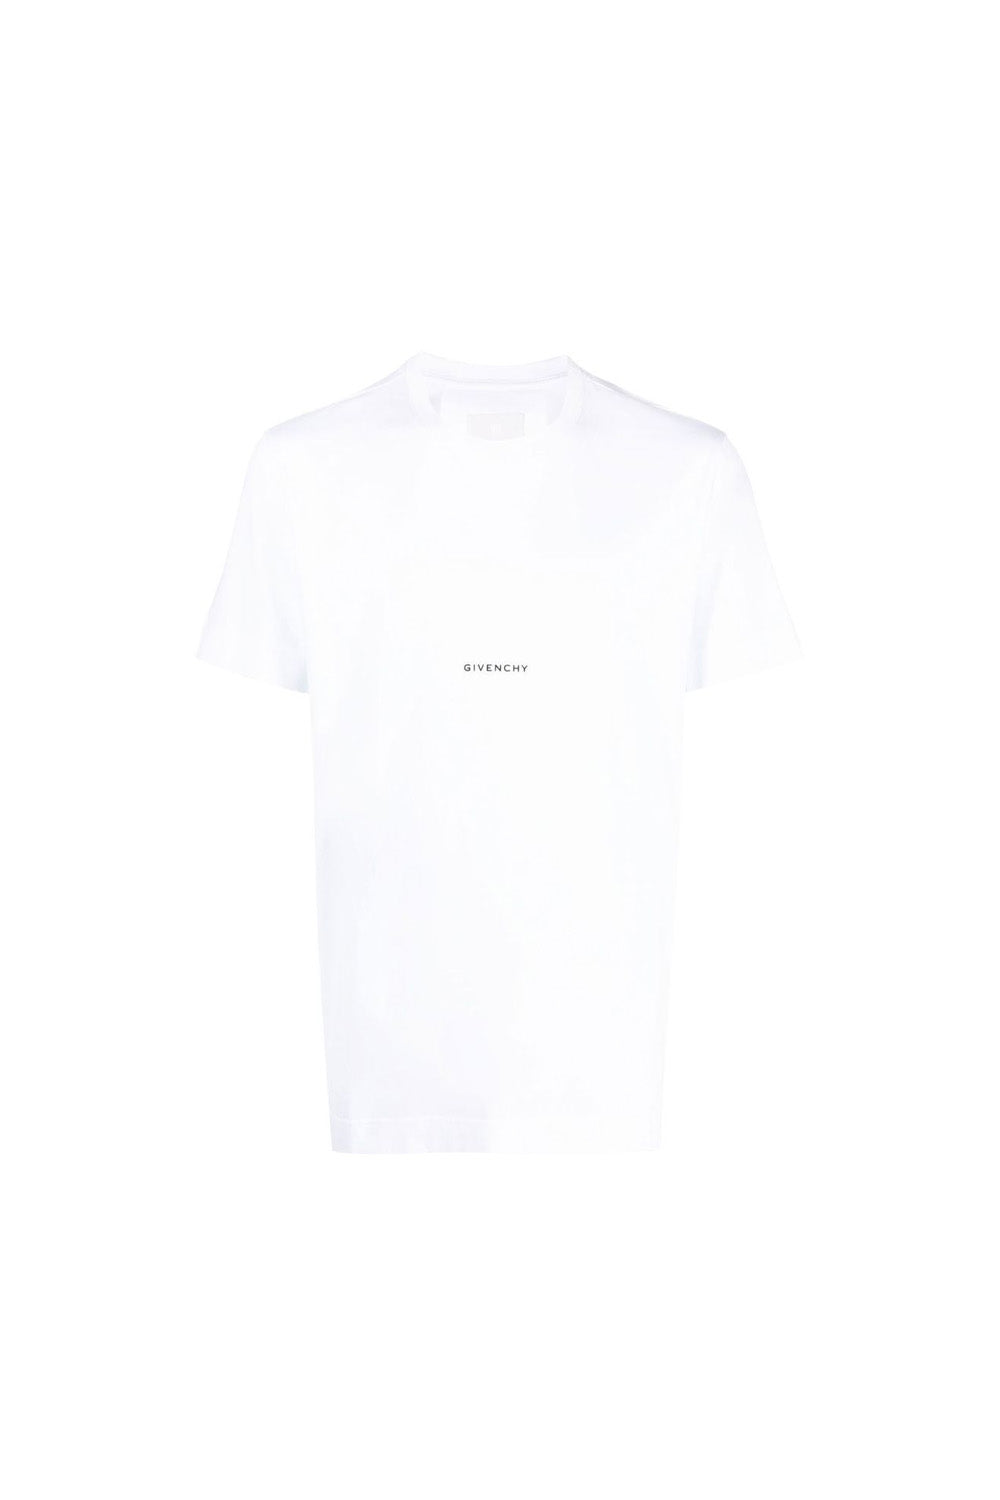 Givenchy small logo-print T-shirt